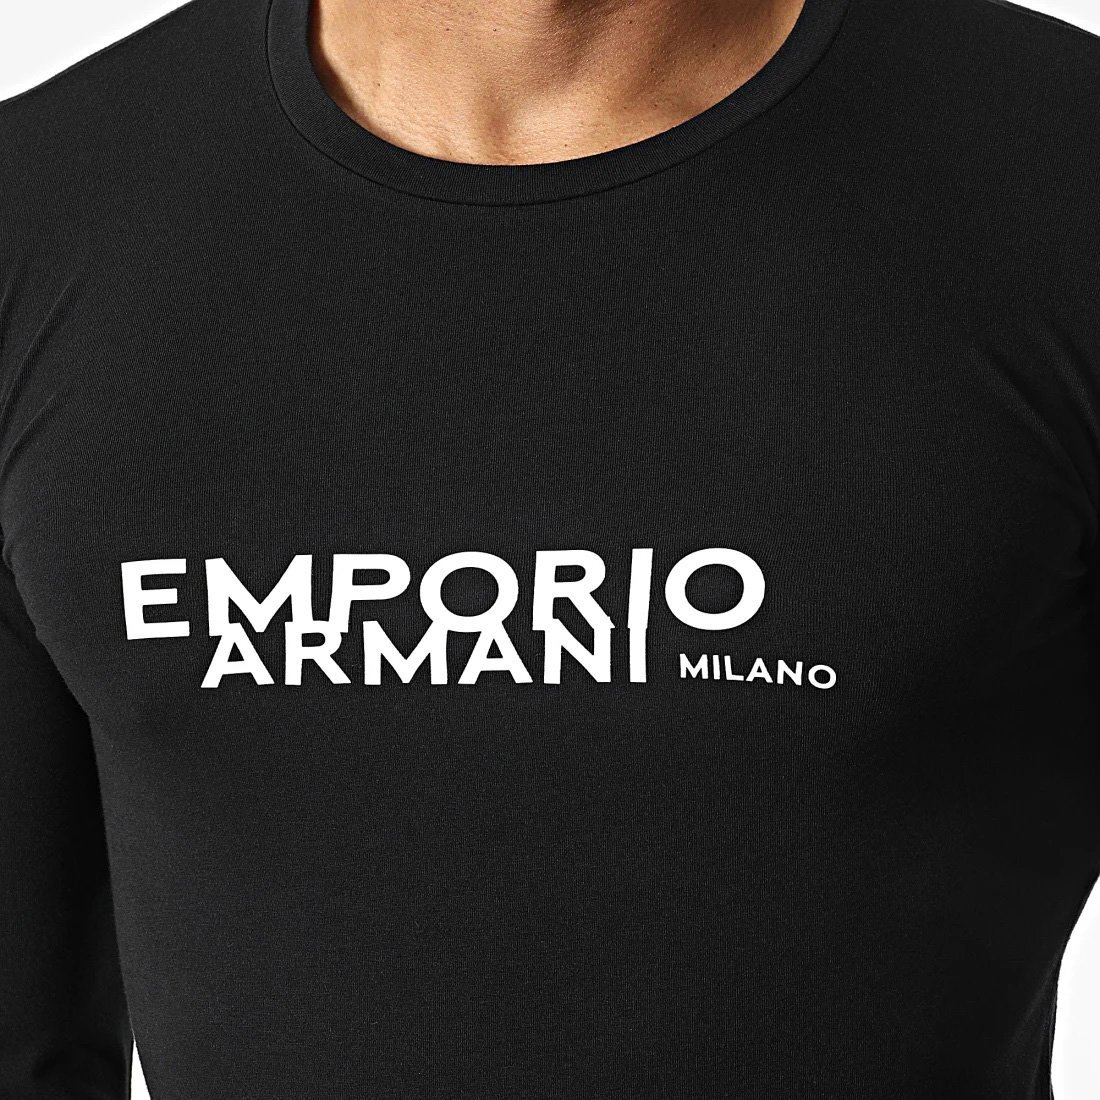 送料無料 48 EMPORIO ARMANI エンポリオアルマーニ 111023 2F725 ブラック Tシャツ 長袖 ロゴ size L_画像4